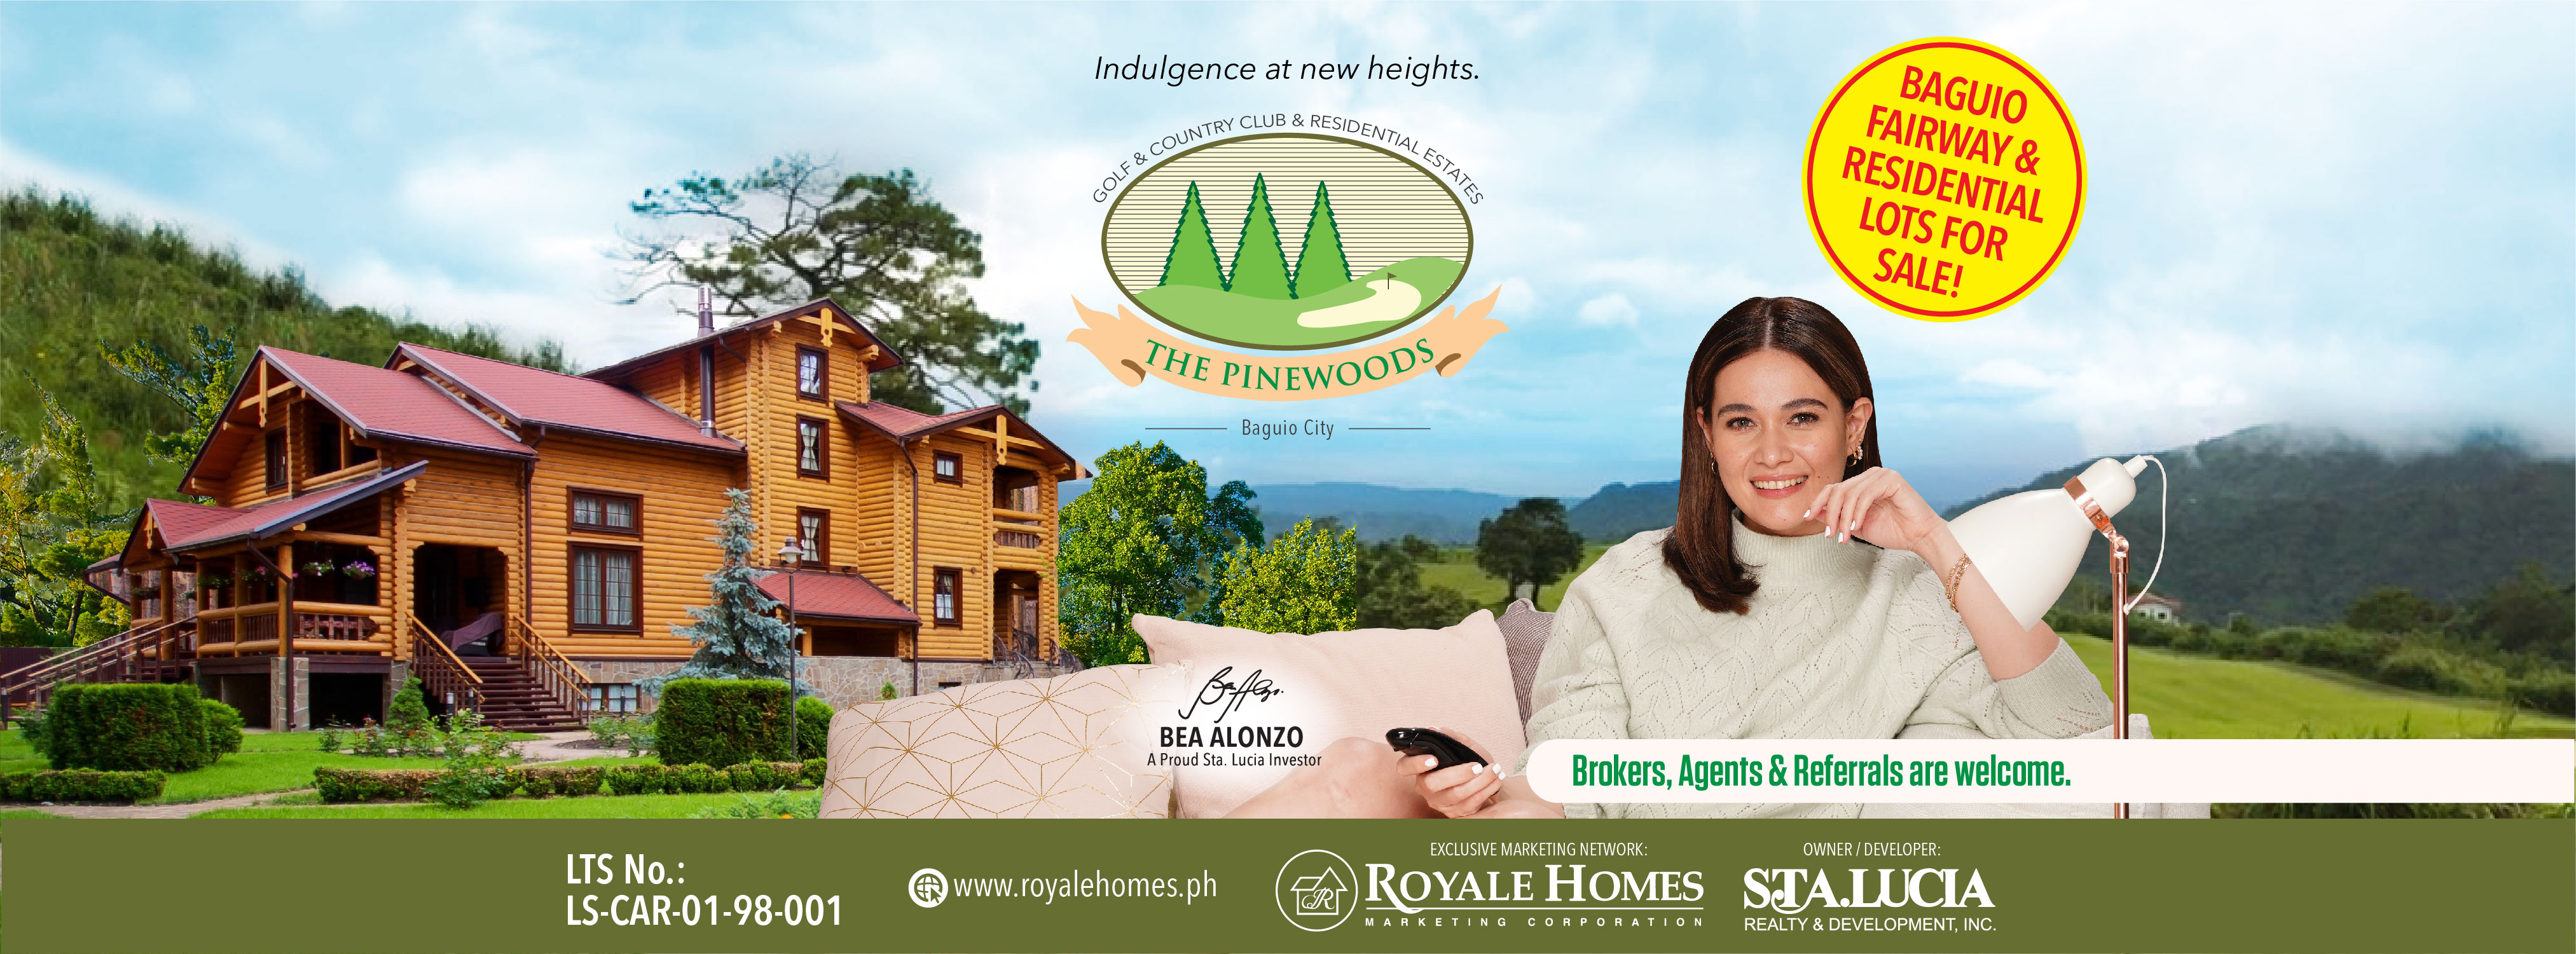 Pinewoods Baguio